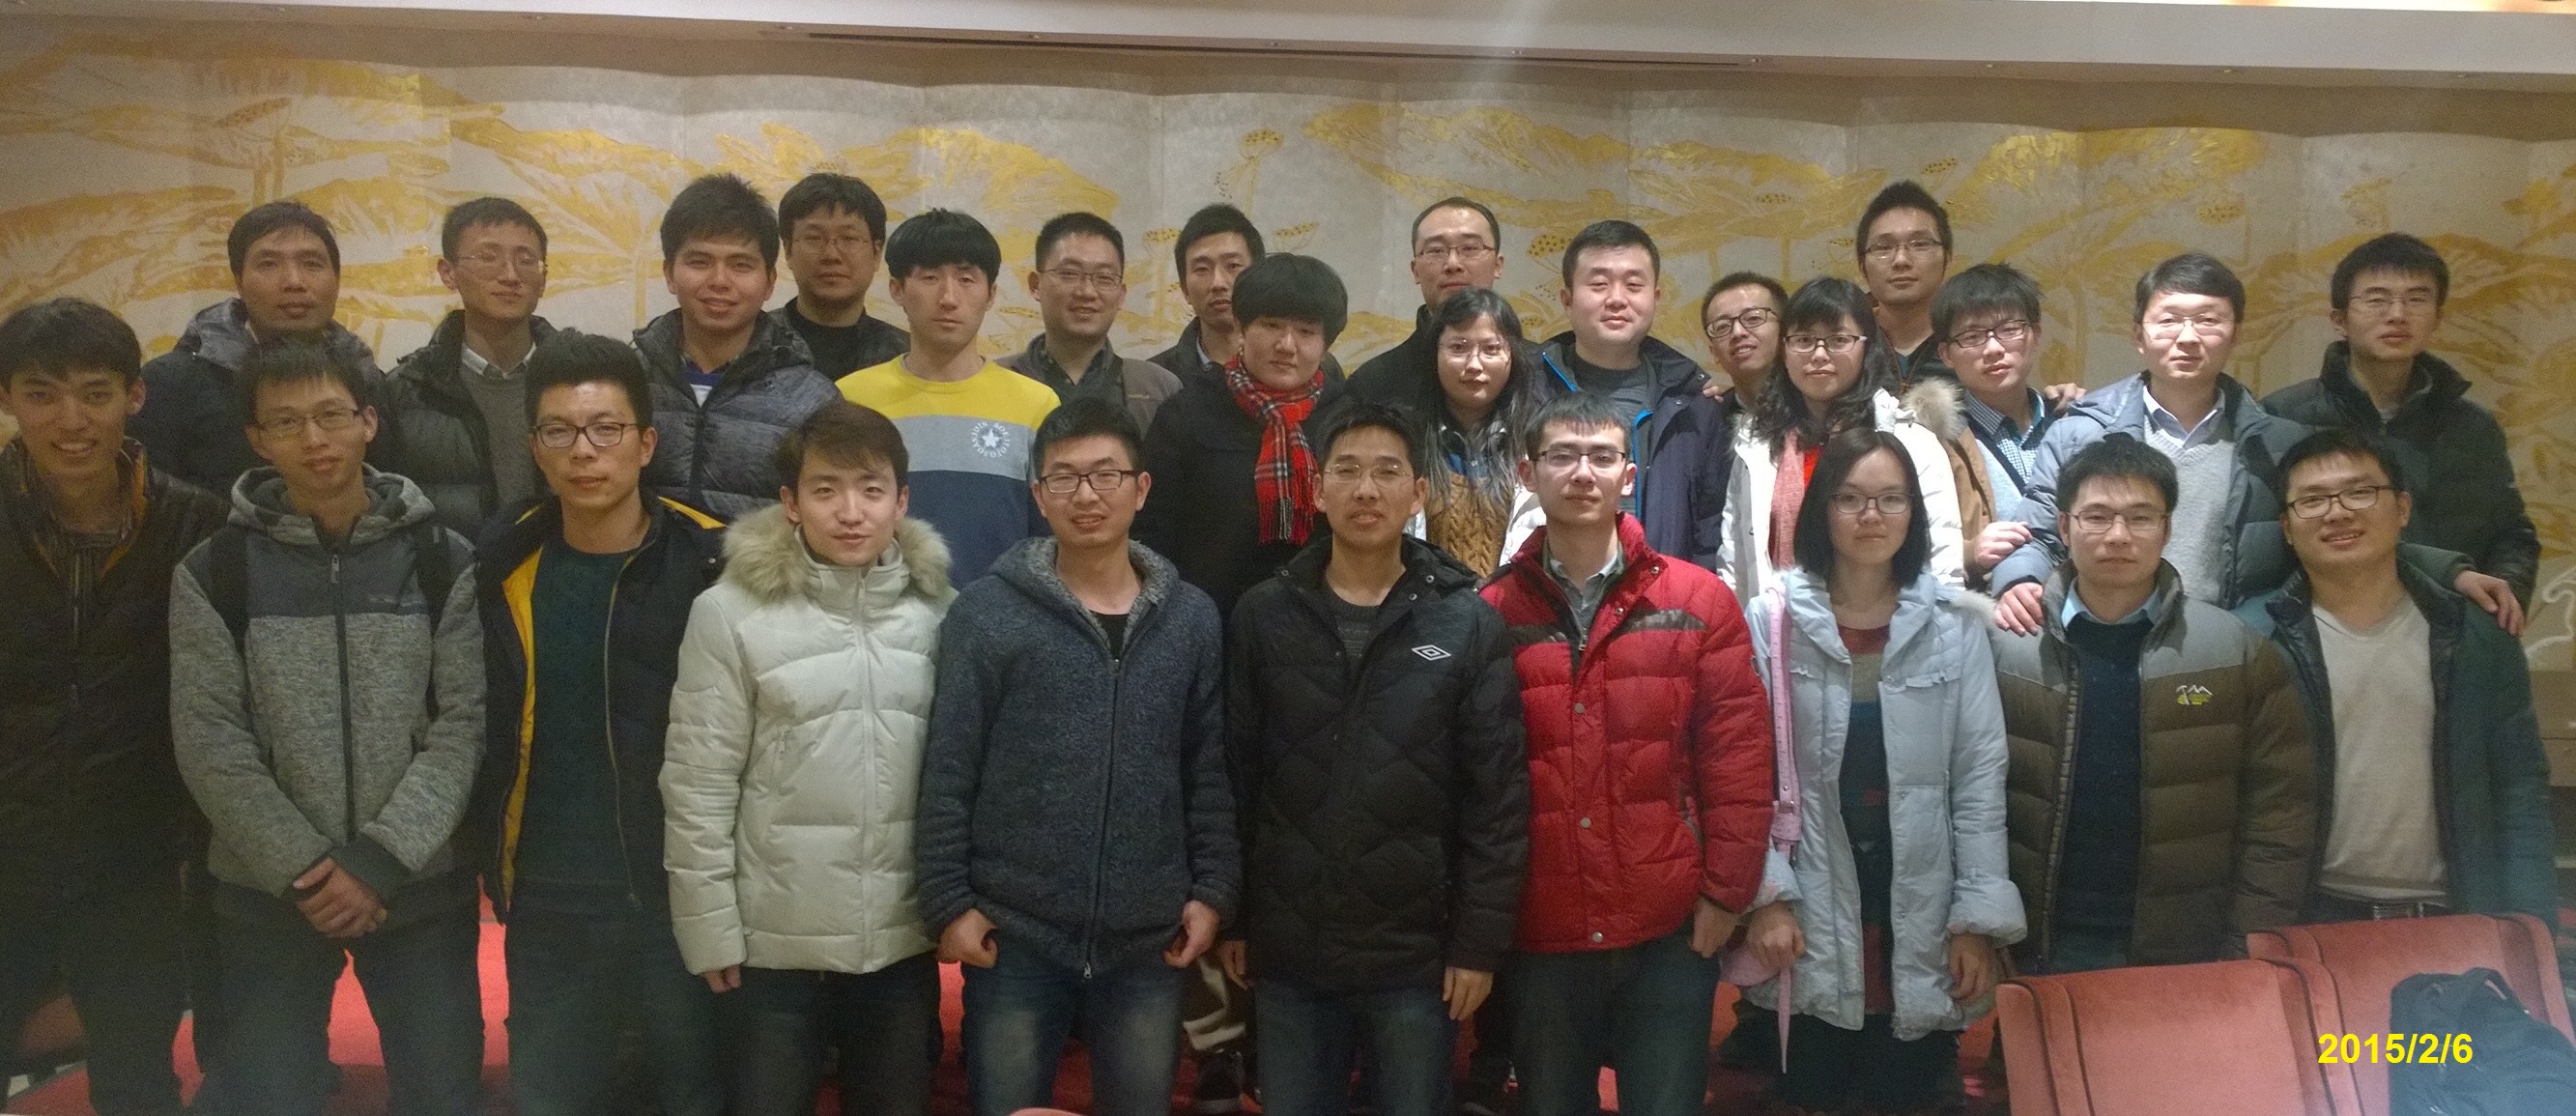 RFIC group members in Shanghai Fortune Hotel